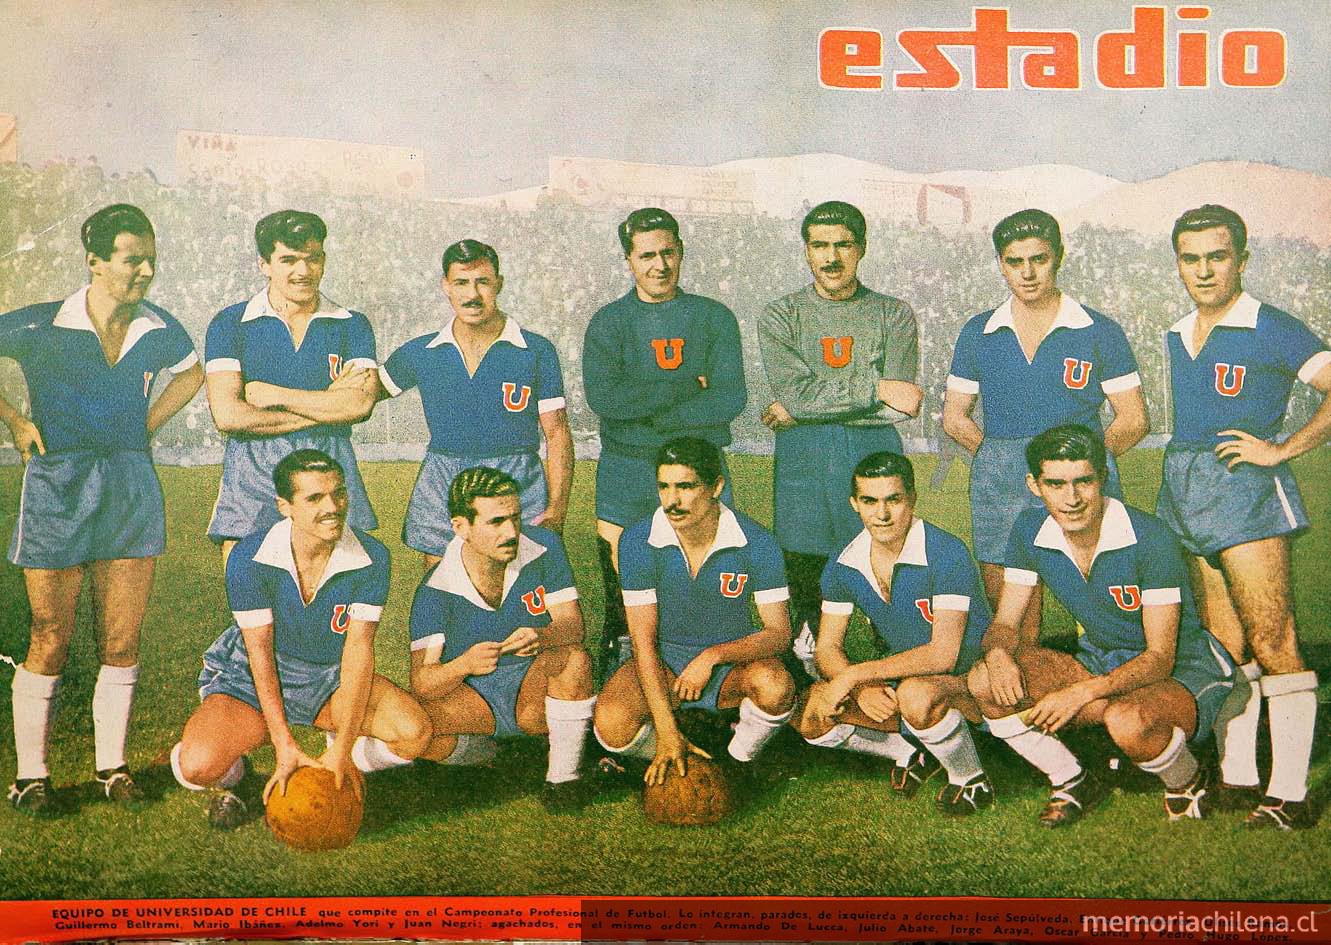 Equipo de Universidad de Chile 1949 Estadio. Santiago : [s.n.], 1941-1982, nº 318, (18 jun. 1949), contraportada